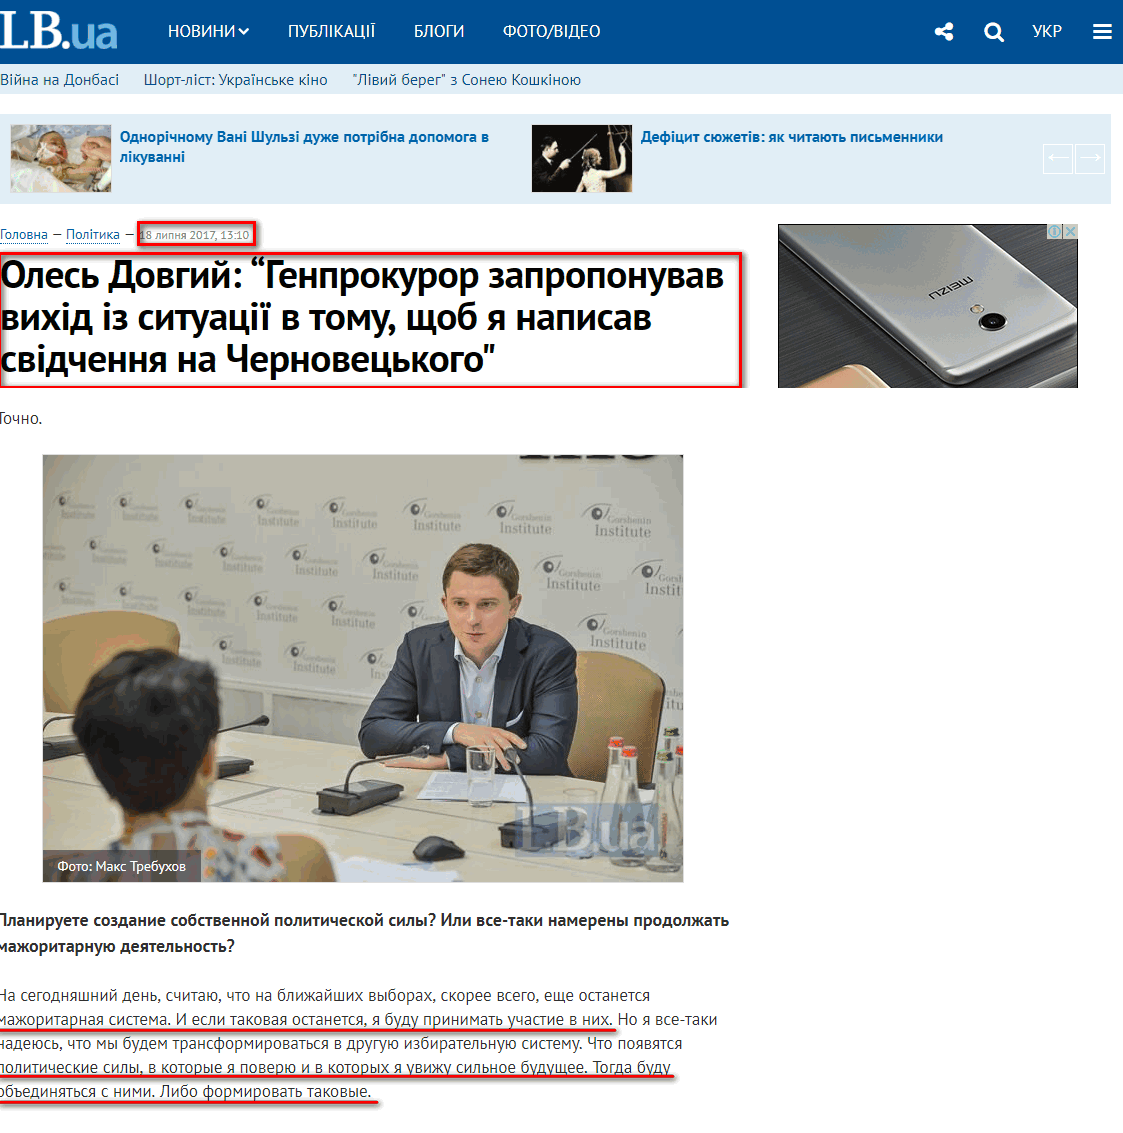 https://ukr.lb.ua/news/2017/07/18/371719_oles_dovgiy_genprokuror.html